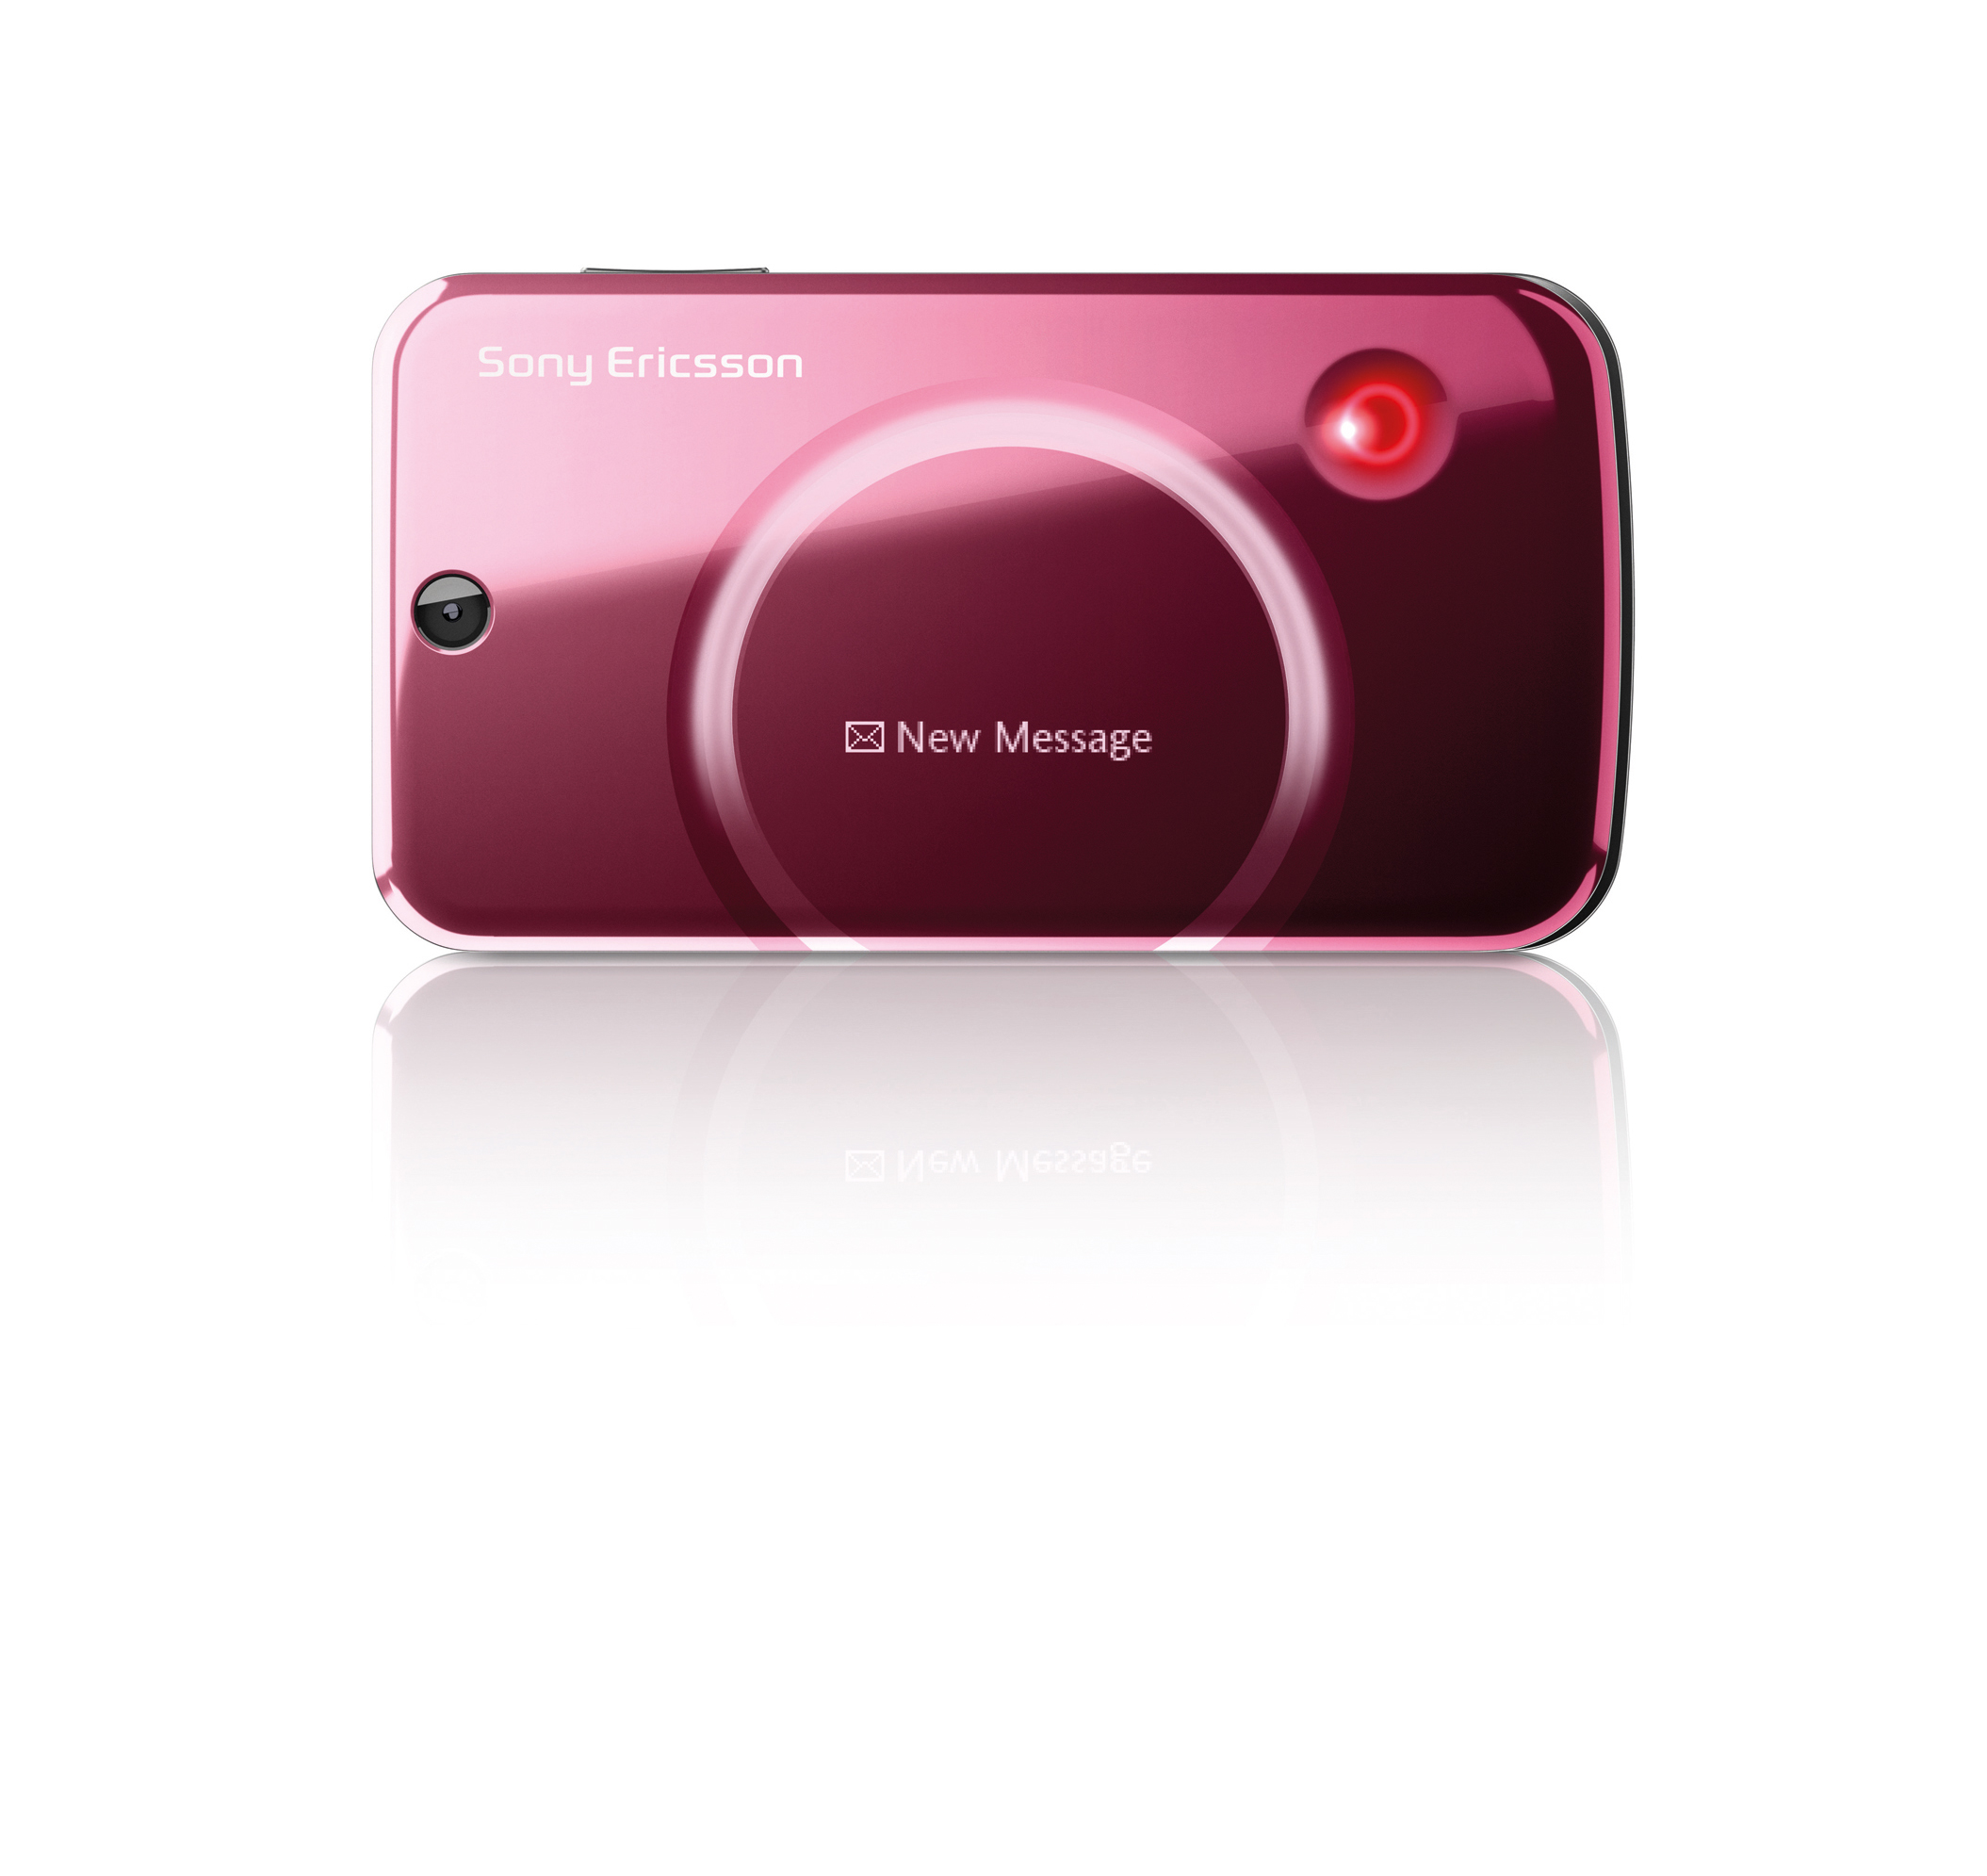 Pressmeddelande Gör livet lite ljusare med nya Sony Ericsson T707 Nya Sony Ericsson T707 adderar glamour i vardagen.